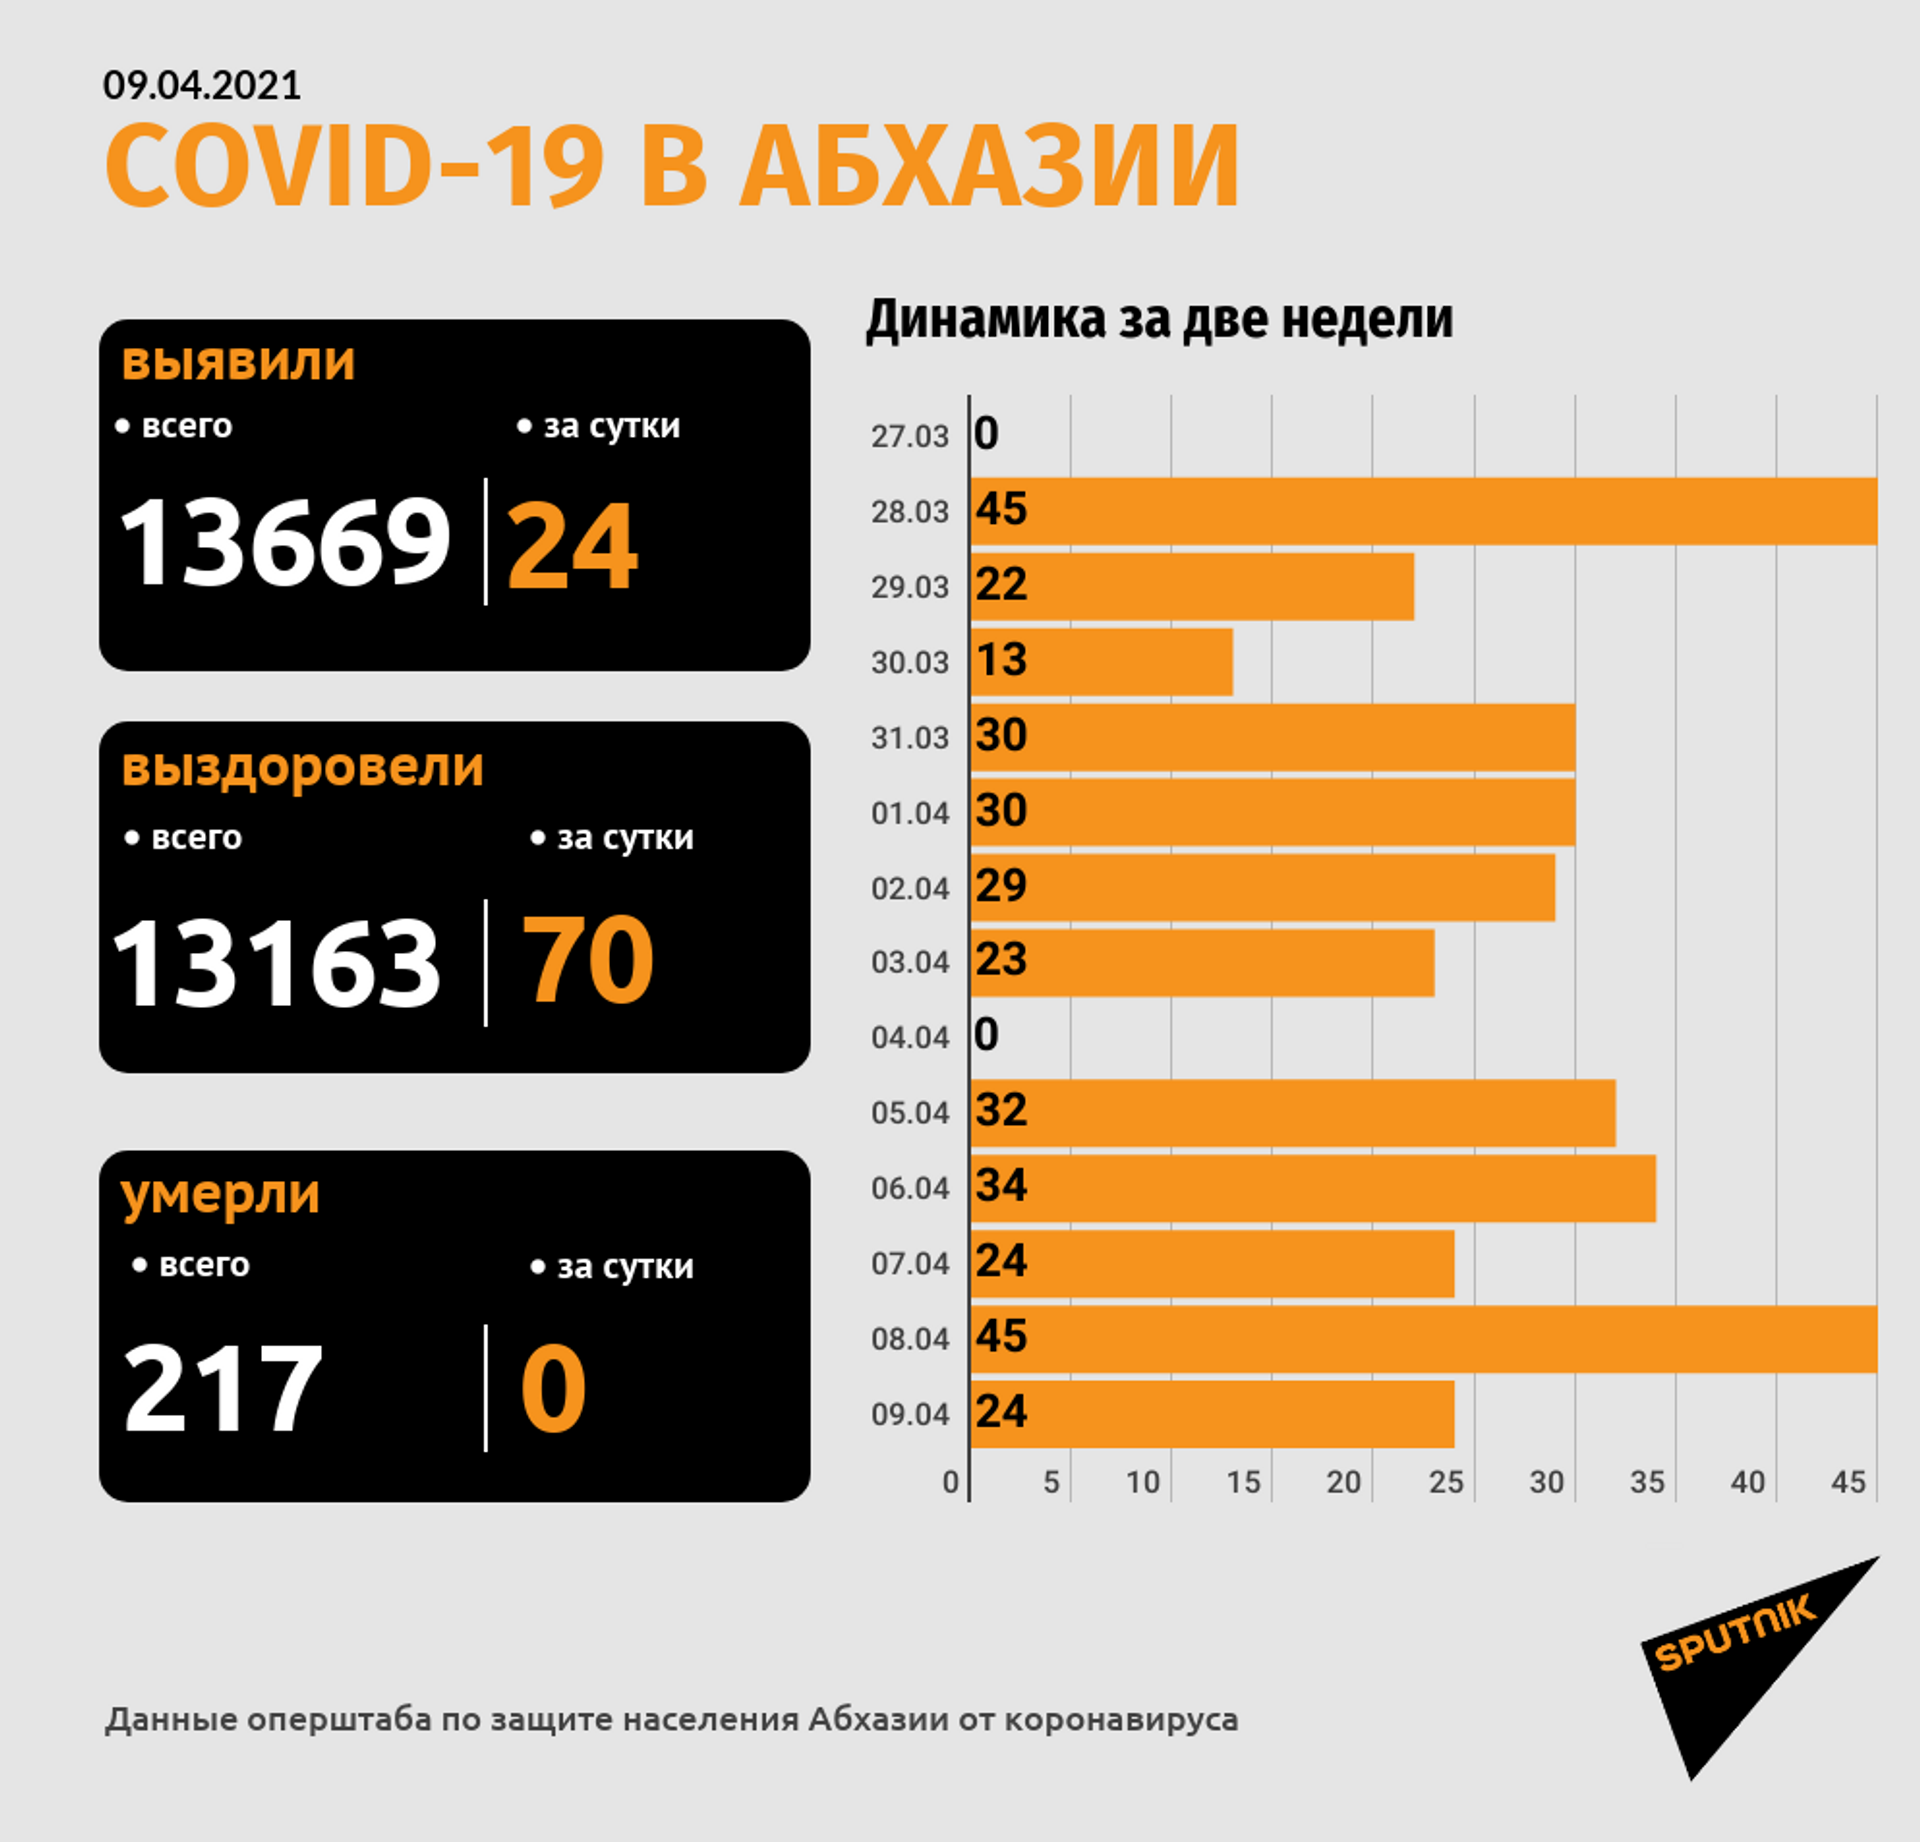 Еще 24 новых случая COVID-19 зафиксировано в Абхазии за сутки - Sputnik Абхазия, 1920, 09.04.2021